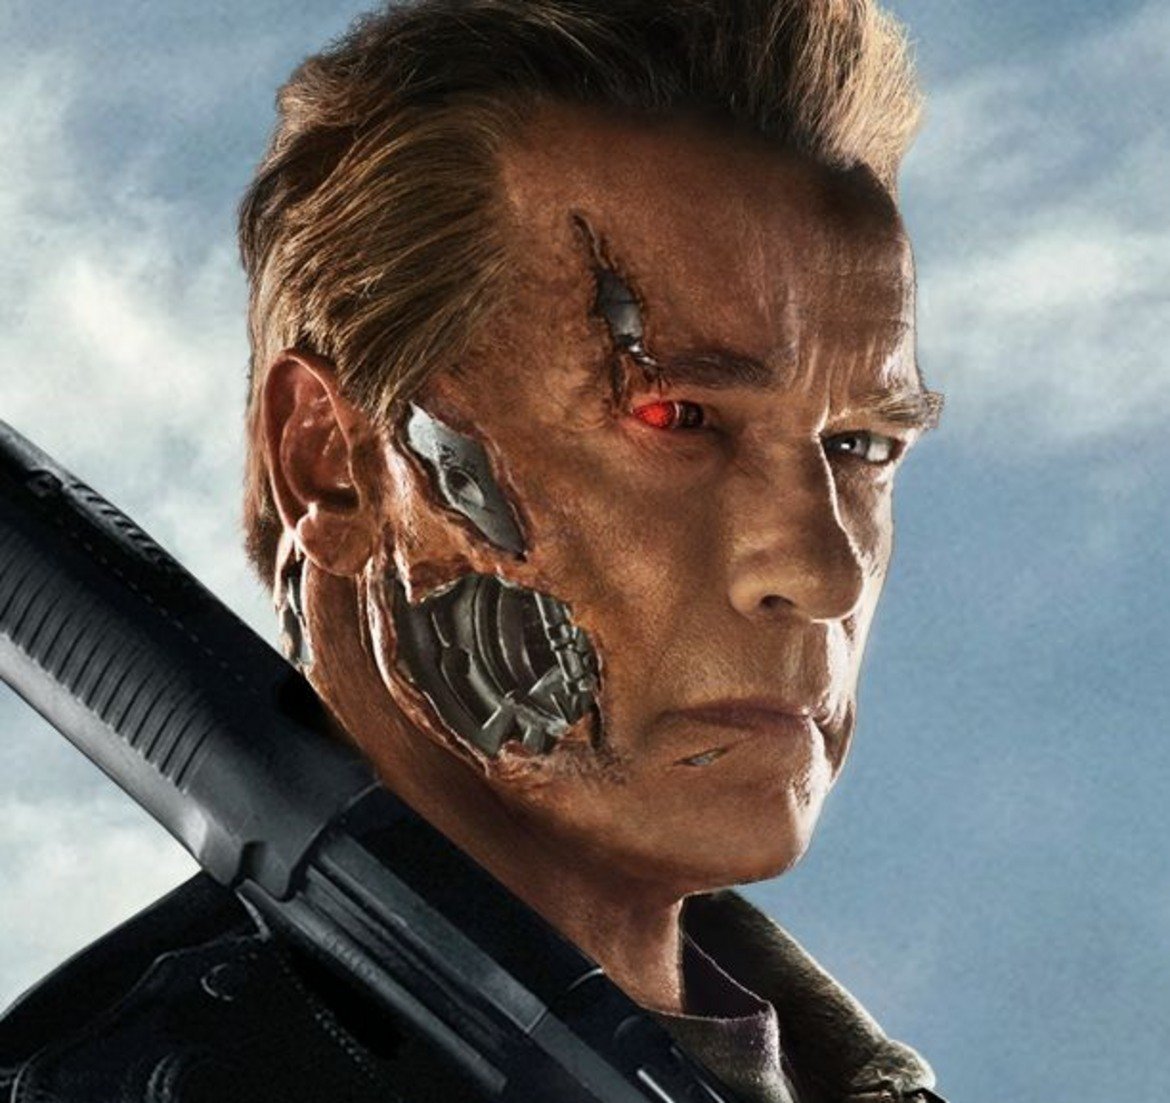 3. Terminator 6

"Терминатор: Генисис" (да, името му беше умишлено изчанчено) трябваше да бъде ново начало за поредицата. Завръщането на Арнолд Шварценегер към легендарната му роля, представянето на млади версии на Сара Конър и Джон Конър и, естествено, началото на нова трилогия. Възползвайки се от концепцията за пътуване във времето филмът донякъде рестартира франчайза и даде шанс това да стане възможно.

Критиците обаче му се нахвърлиха като озверели кучета върху чичо на Ким Чен-ун, а боксофис представянето му също не беше впечатляващо. Така пропадна планираното продължение, което трябваше да се фокусира върху Джон Конър (Джейсън Кларк)- вече получовек, полумашина. 

Но спокойно, фенове на Шварценегер - все пак нов Terminator ще има. Джеймс Камерън, създателят на поредицата, ще "надзирава" нова трилогия, която вероятно ще пренебрегне поне няколко от филмите след "Terminator 2". И, естествено, култовият T-800 (Арни!) ще има място в нея. Но след вече три опита за съживяване на поредицата е трудно човек да е развълнуван.
